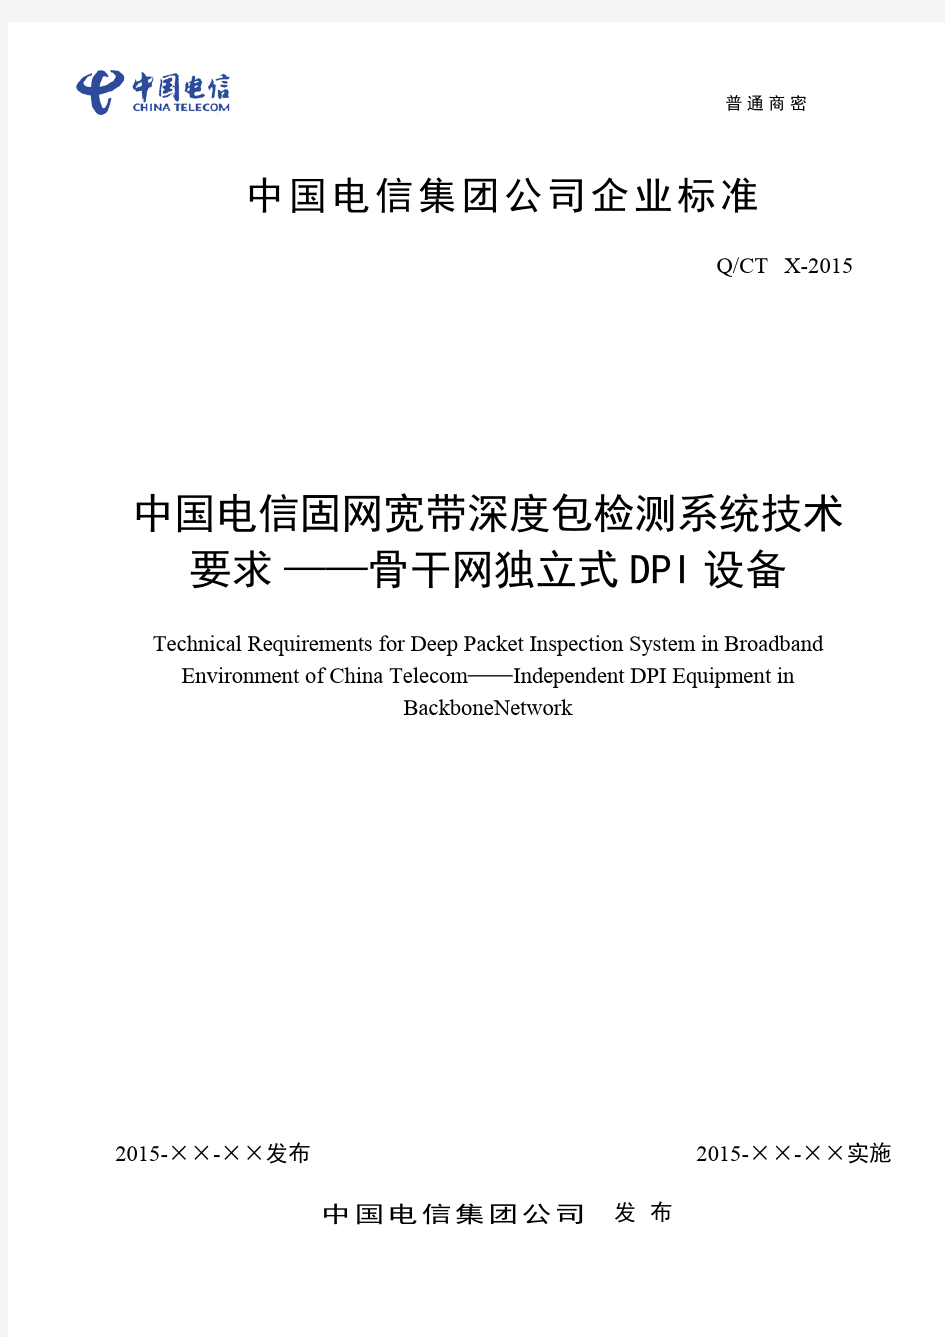 2016年中国电信固网宽带深度包检测系统技术要求—骨干网DPI设备